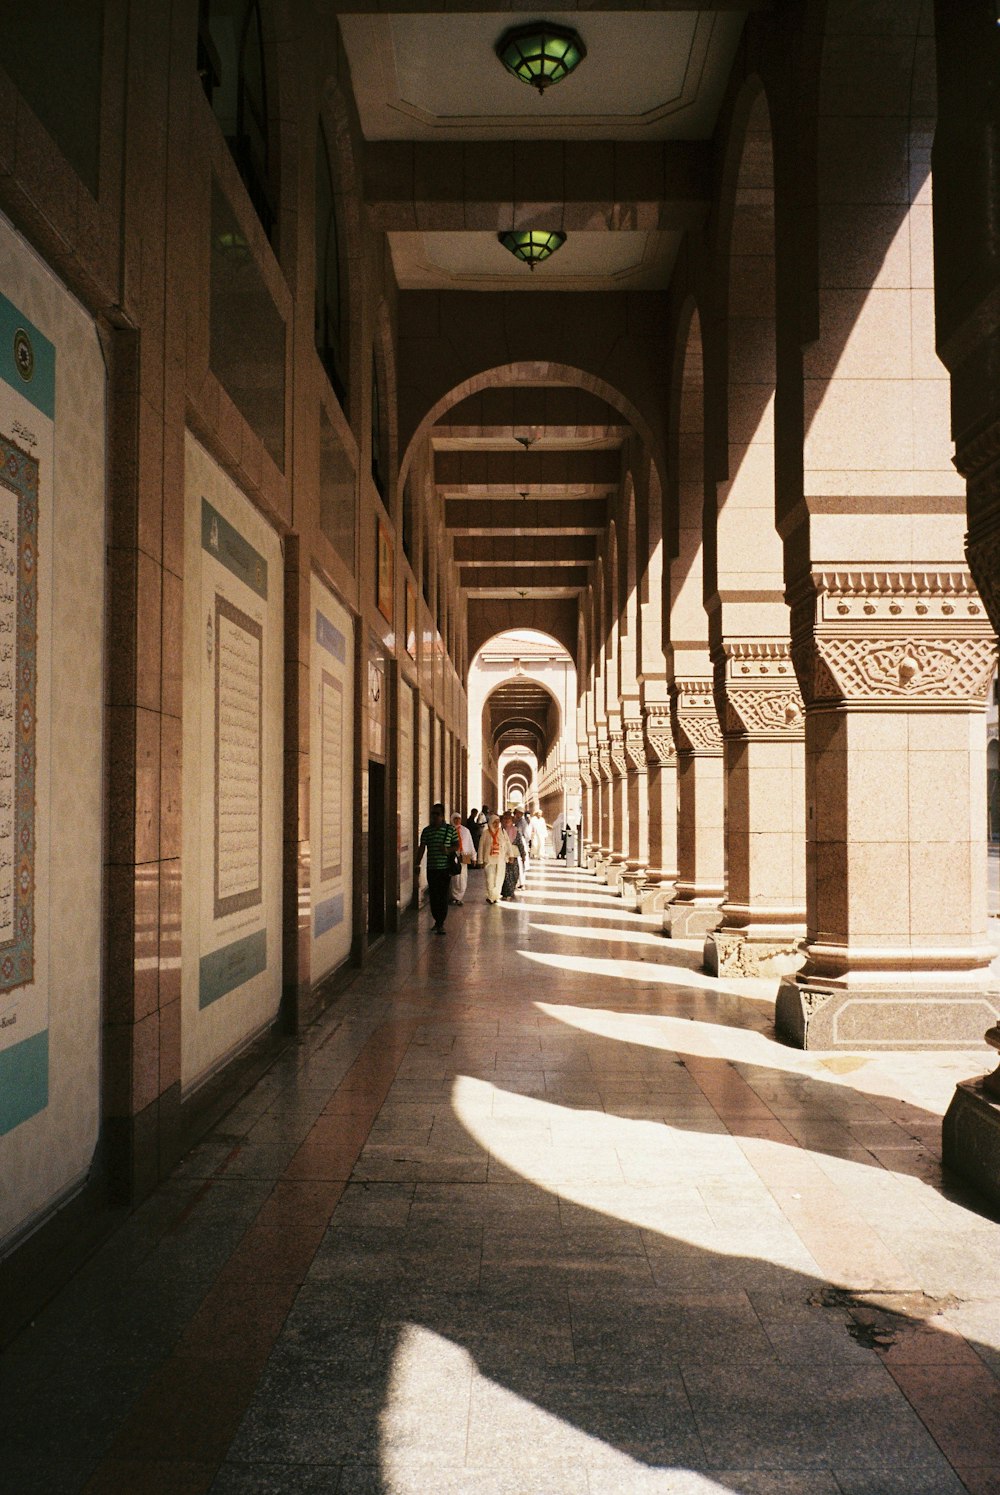 people walking on hallway during daytime